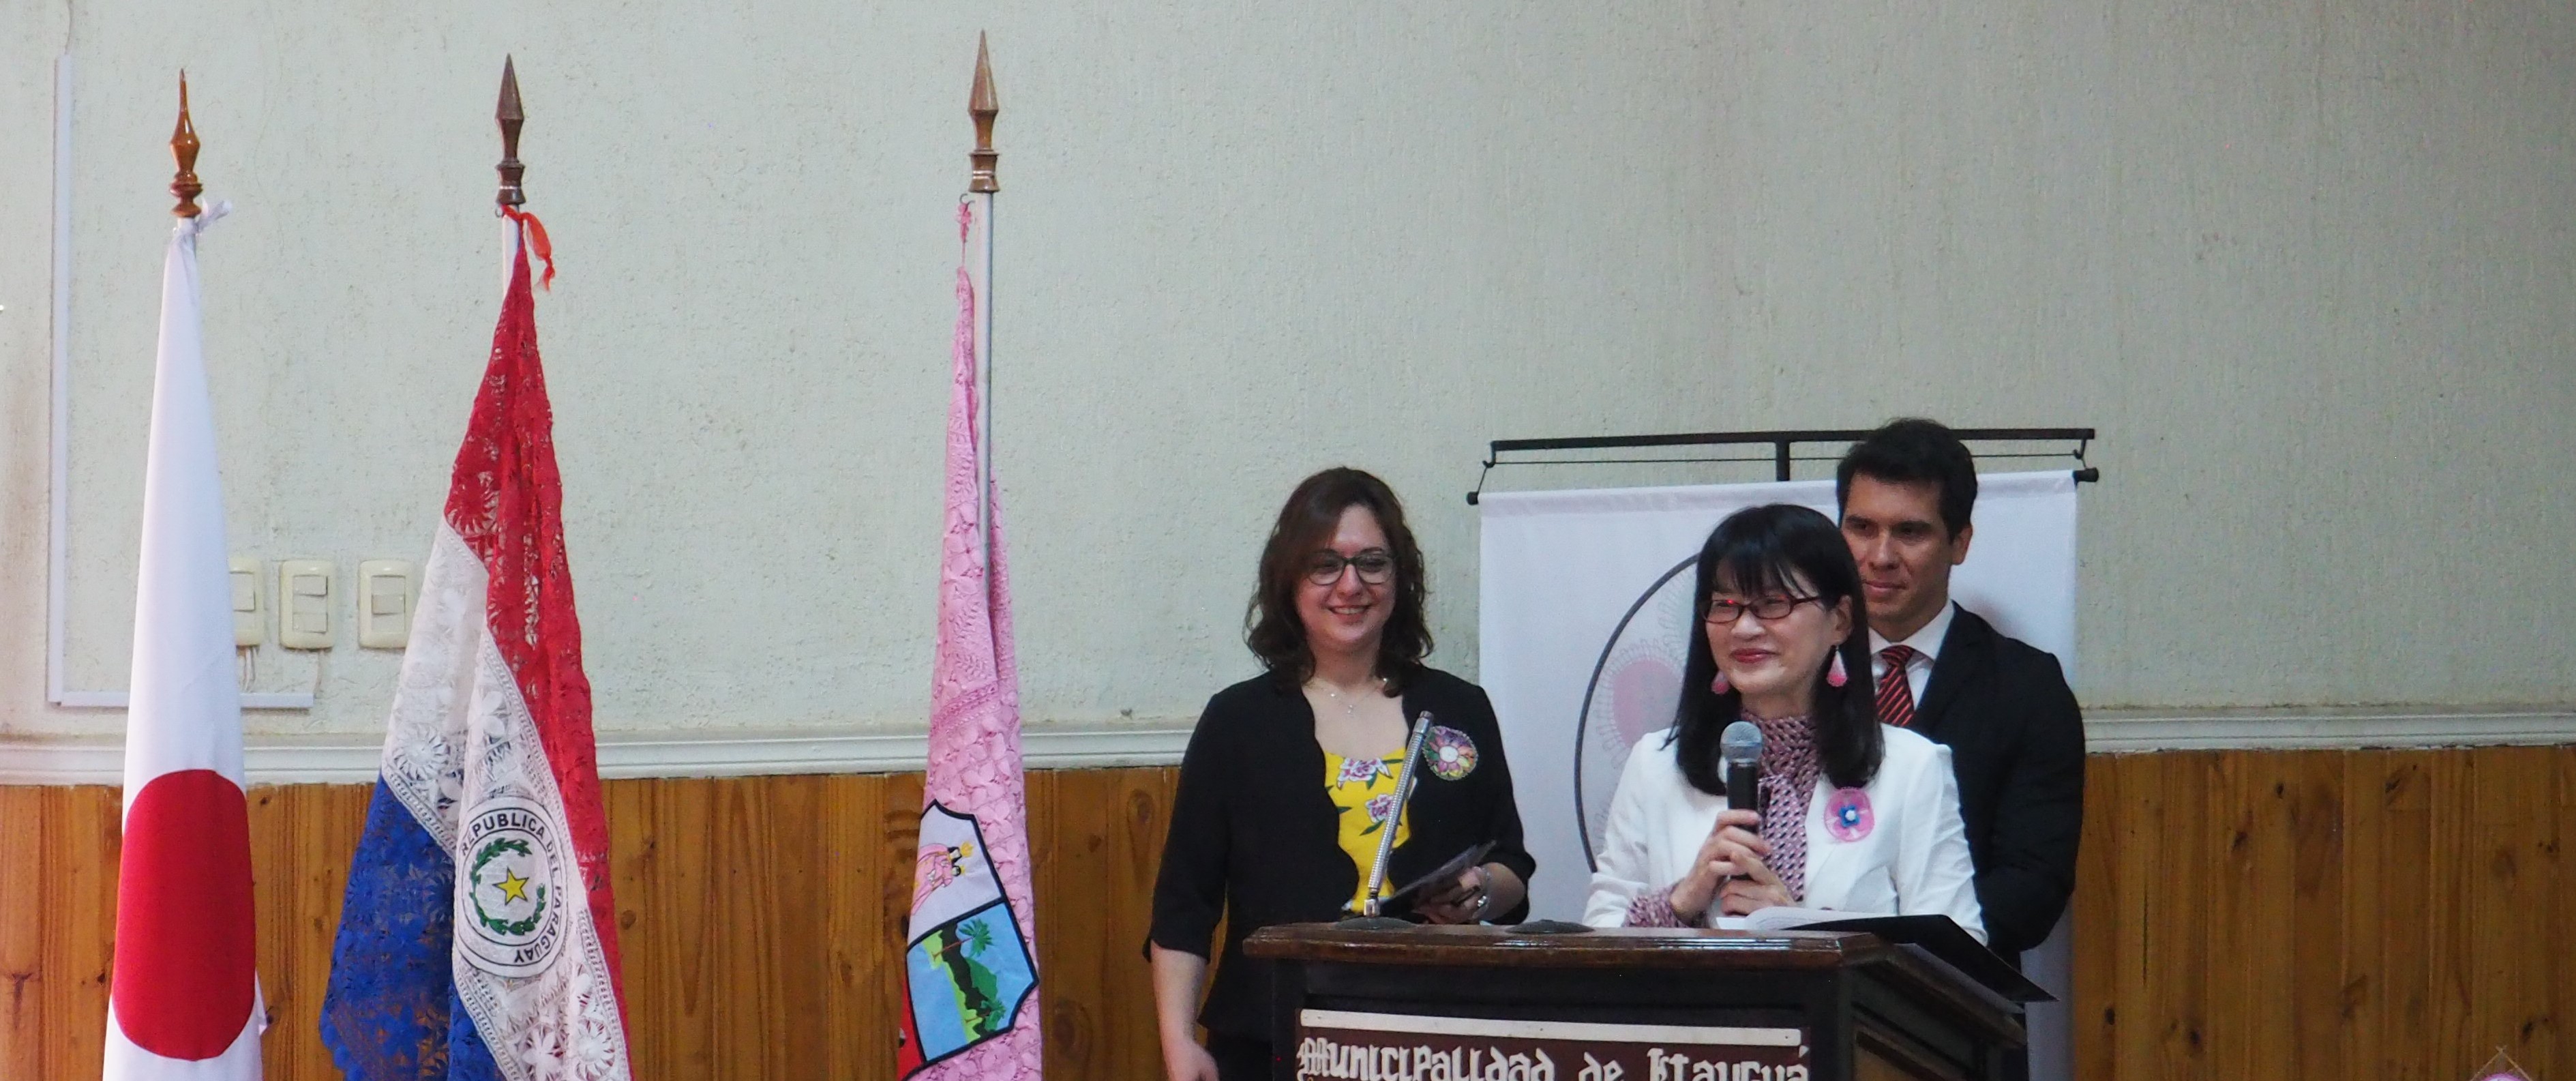 藤掛洋子教授がパラグアイのイタウグア名誉市民として表彰されました。